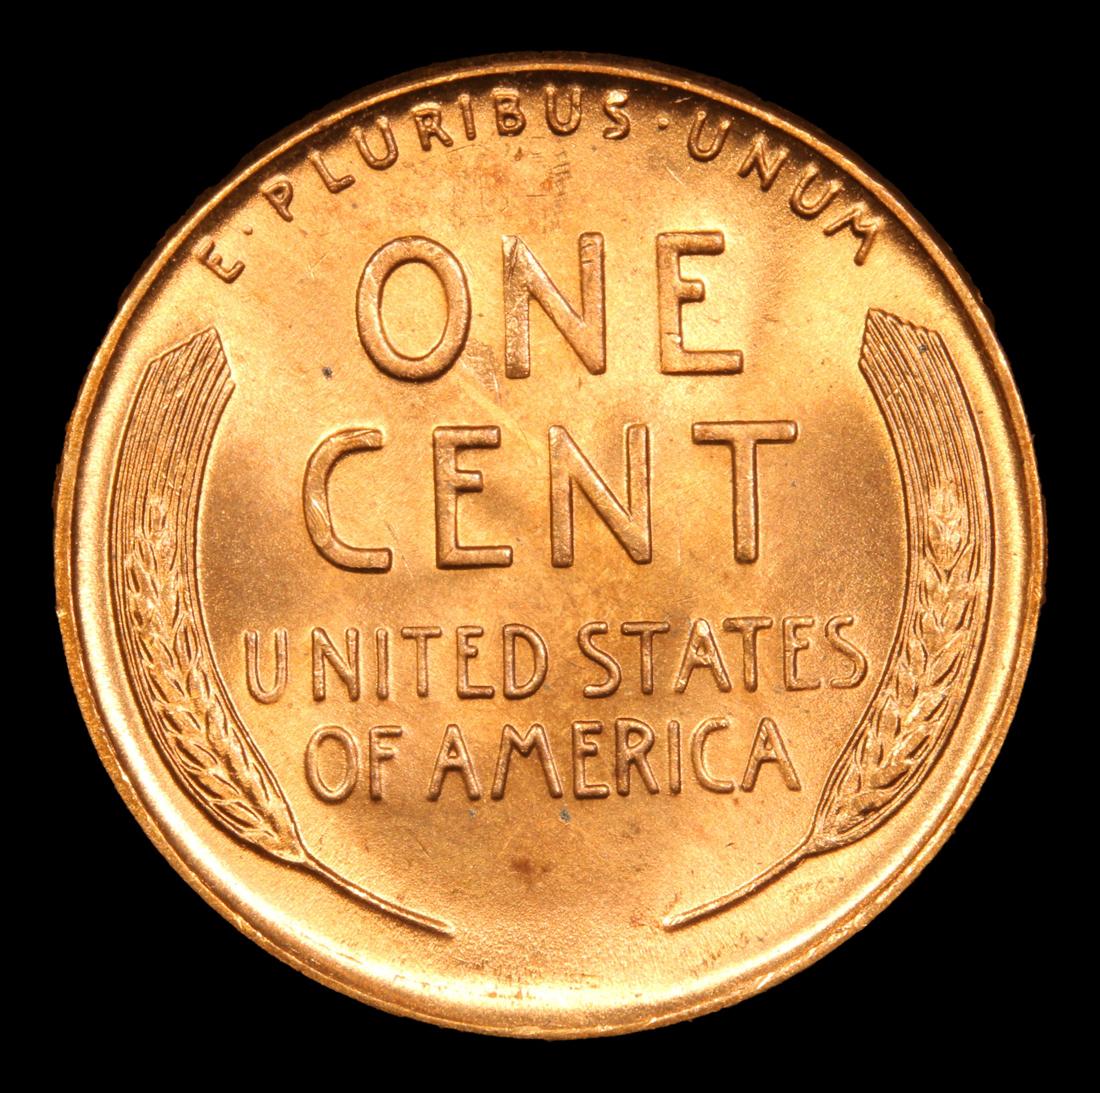 1942-d Lincoln Cent 1c Grades Choice+ Unc RD